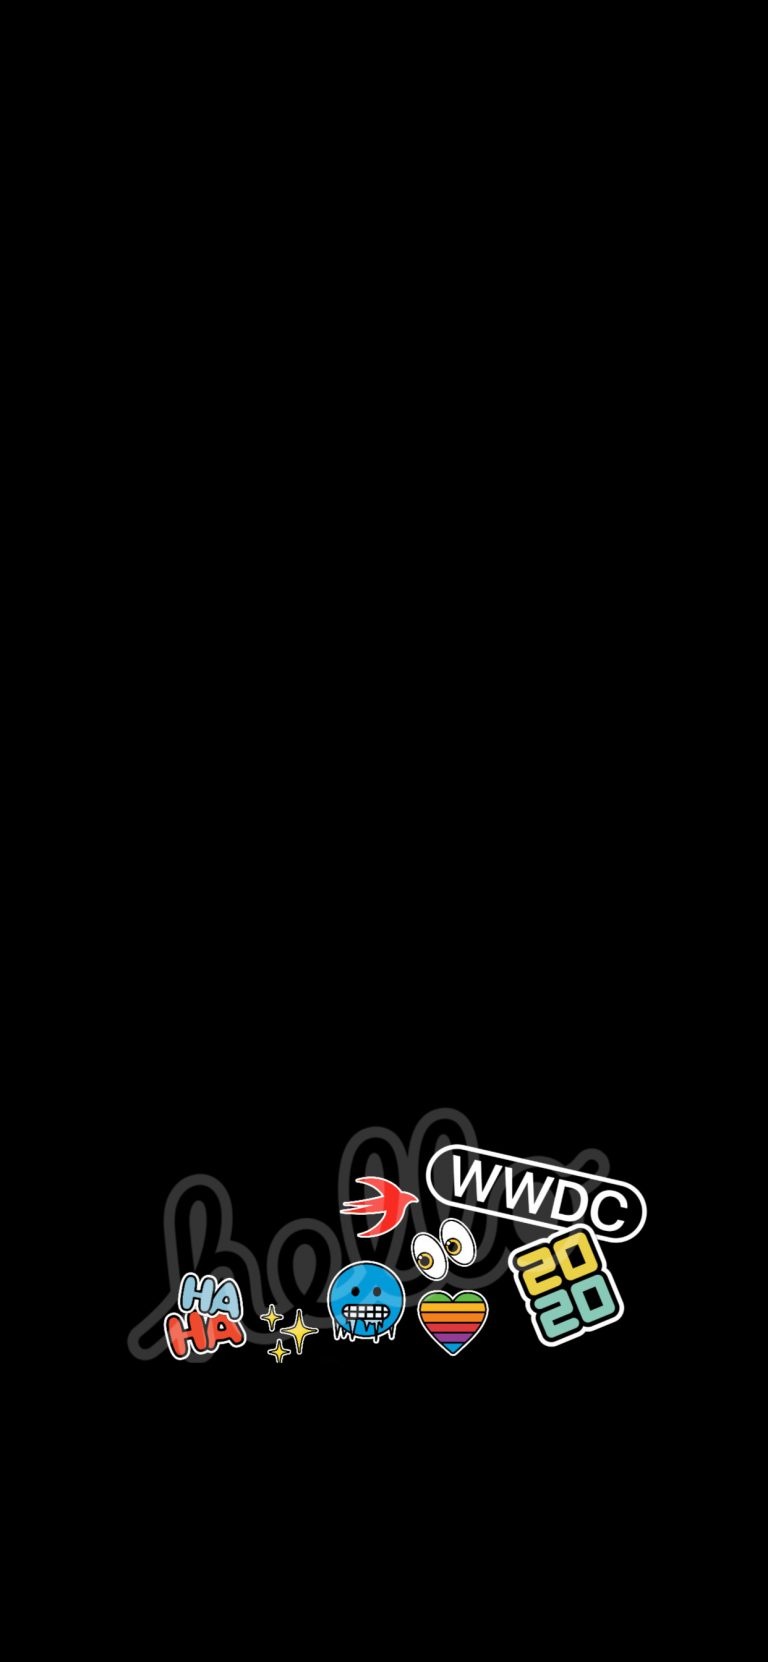 دانلود والپیپر مراسم WWDC 2020 اپل برای آیفون ۵